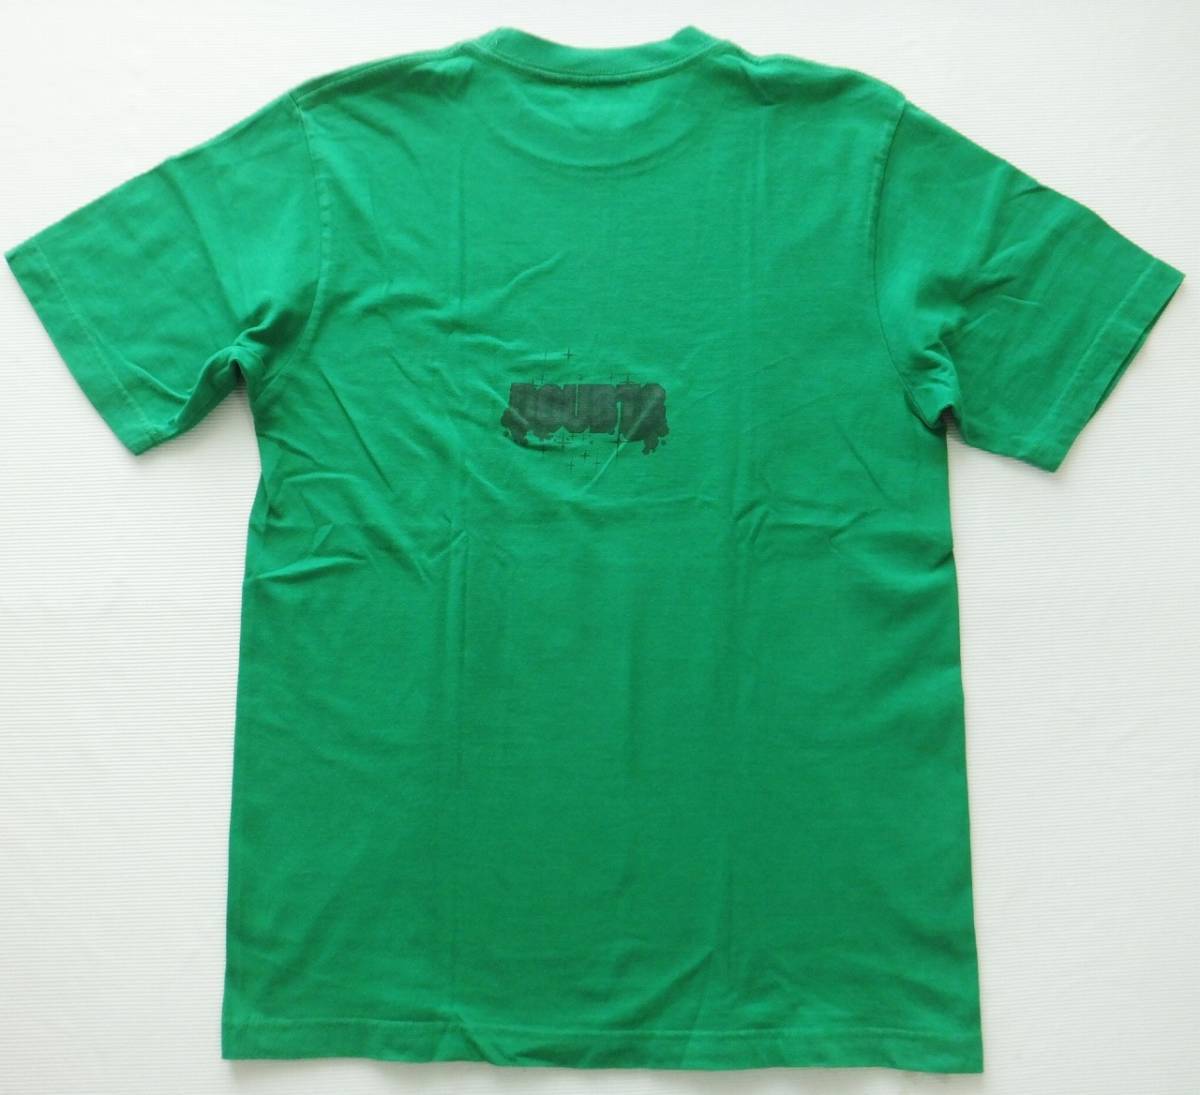 スキーマー SCHEMER Tシャツ アートTシャツ 日本製 グリーン MADEIN JAPAN ハイクオリティ schemerの画像2